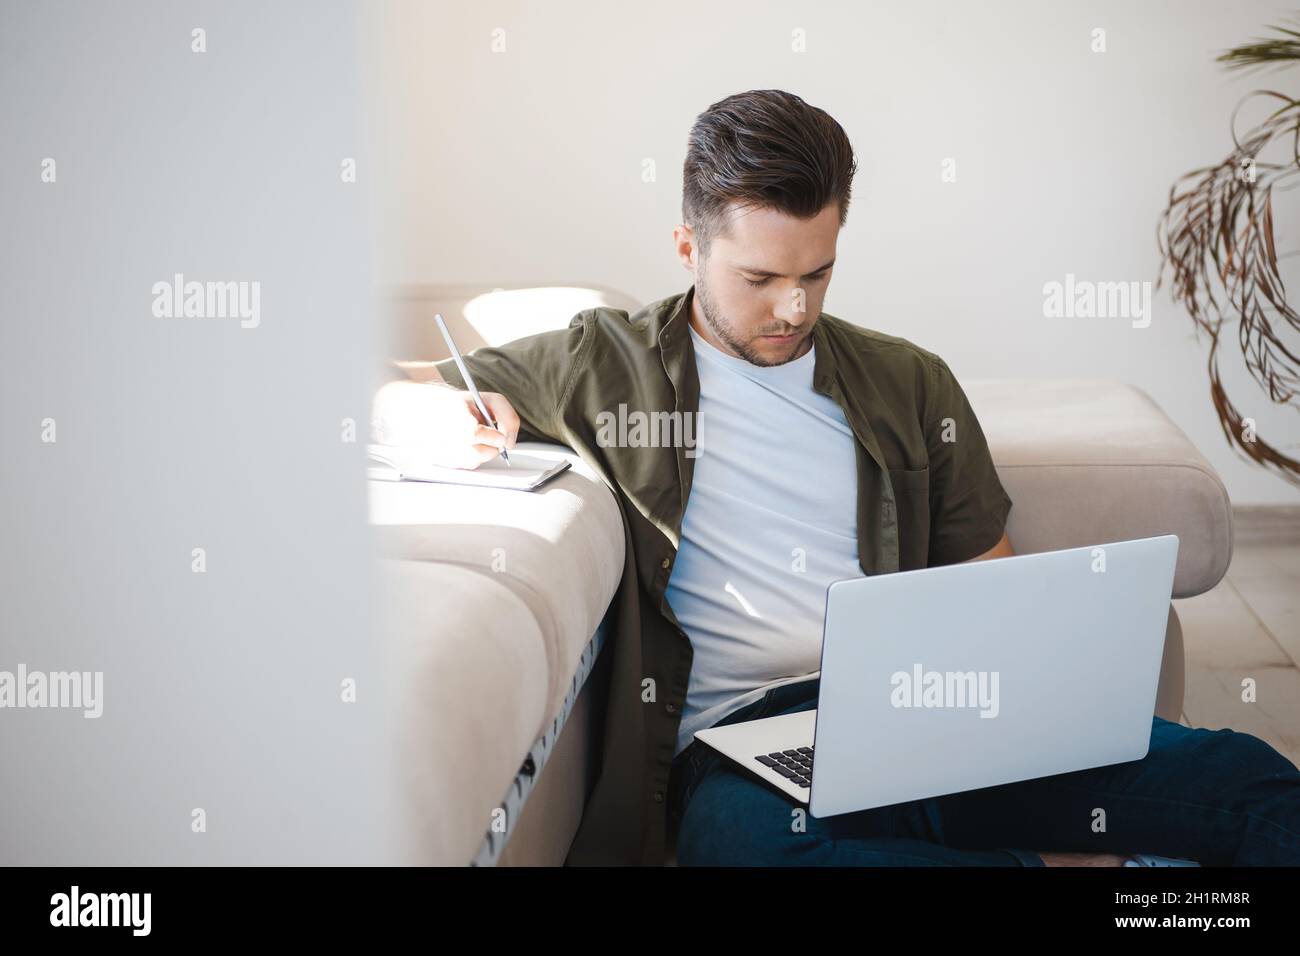 Homme participant à une conférence en ligne assis sur le sol et prenant des notes dans son carnet.Regarder vers le bas Banque D'Images